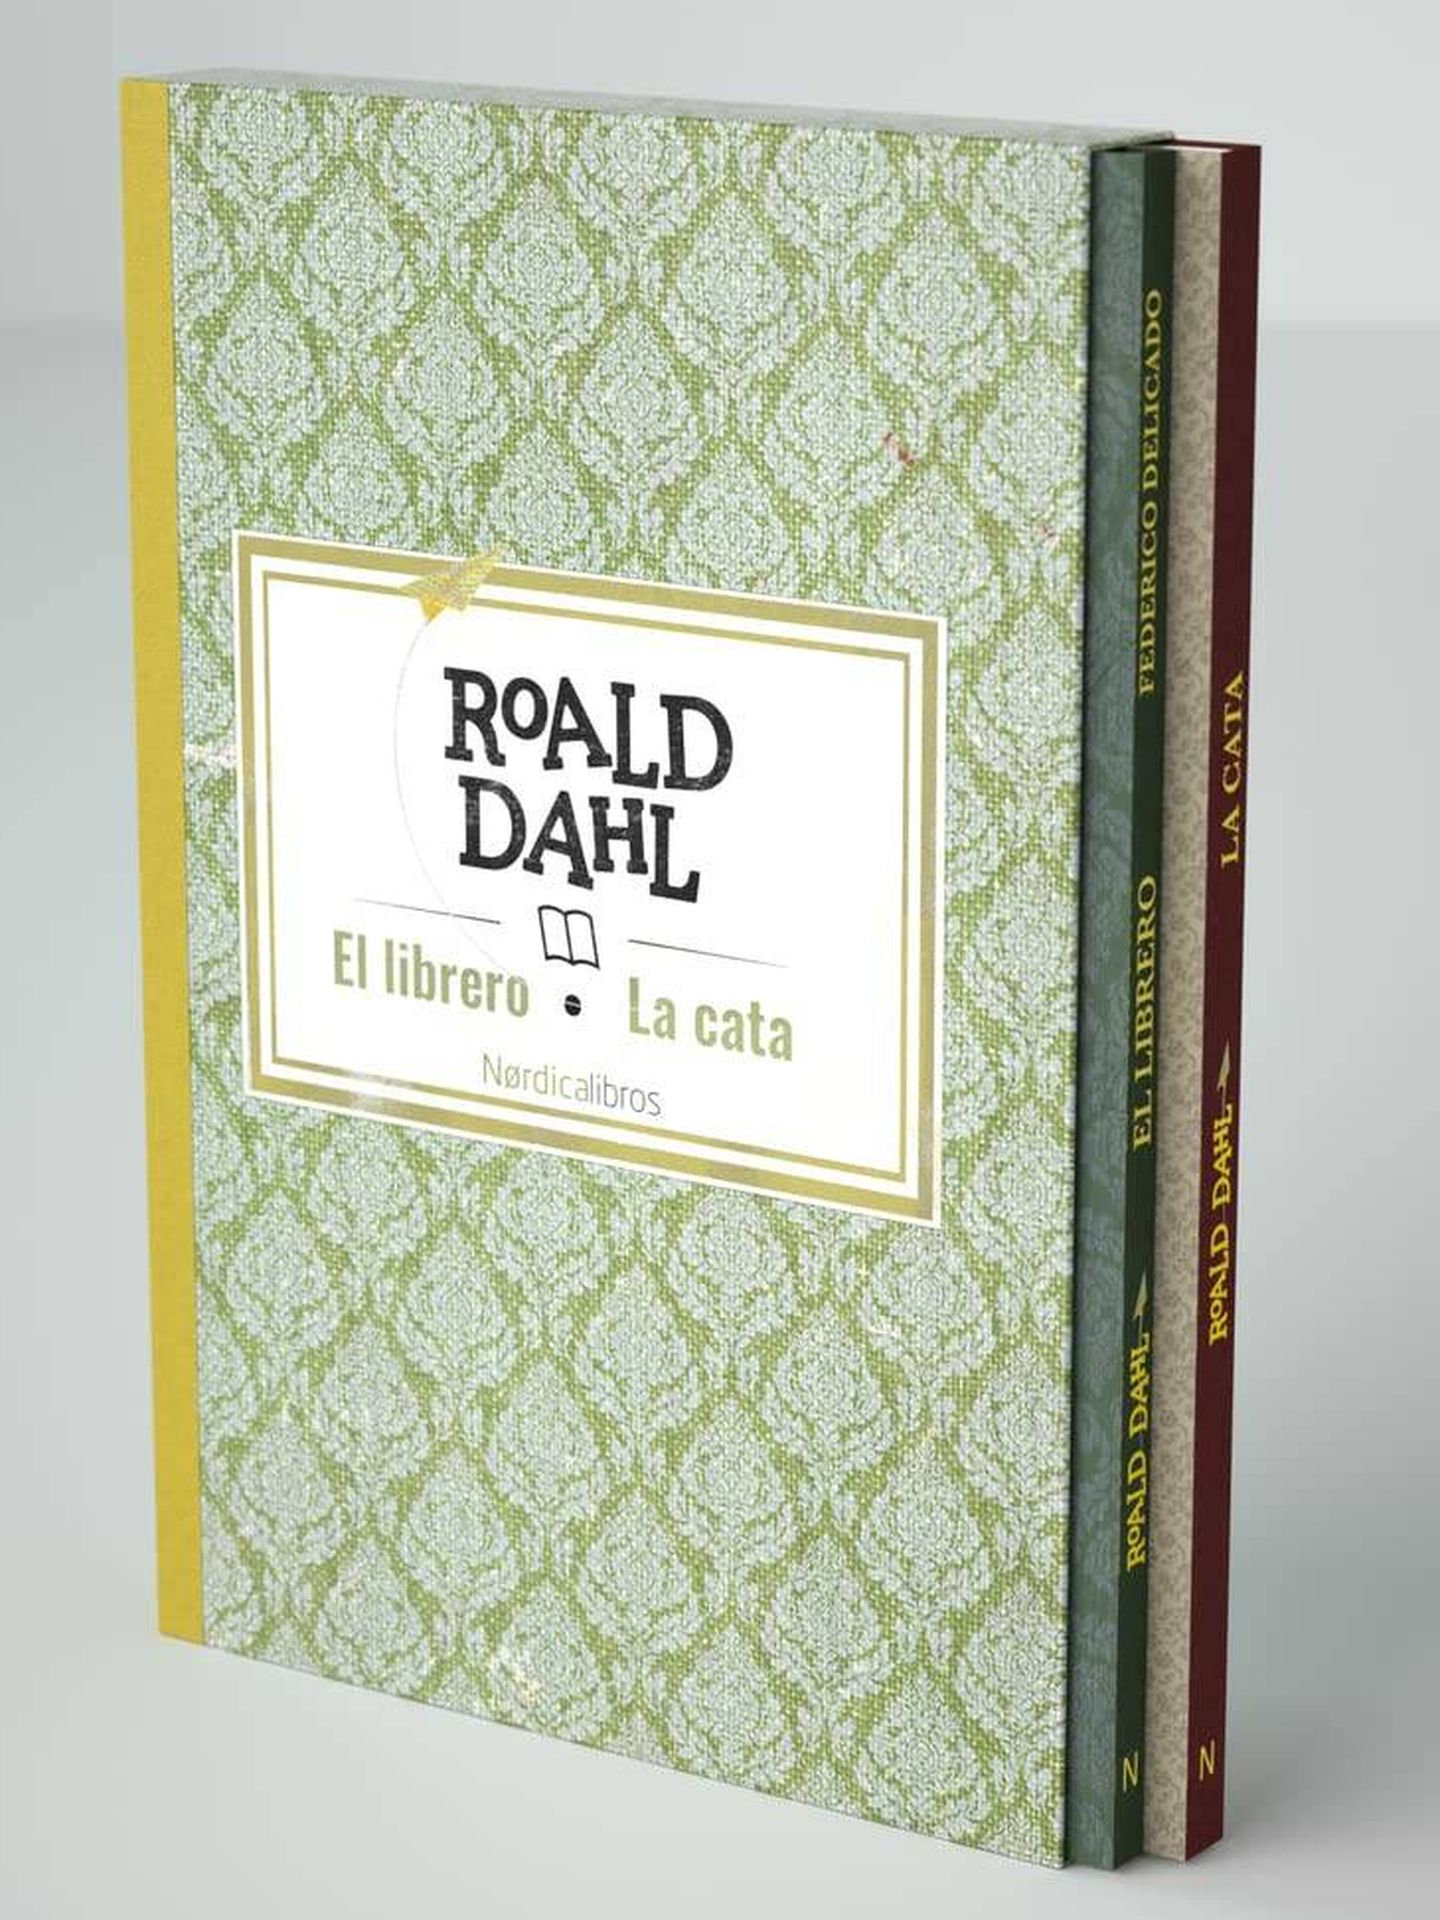 'Estuche Roald Dahl' (Nórdica)